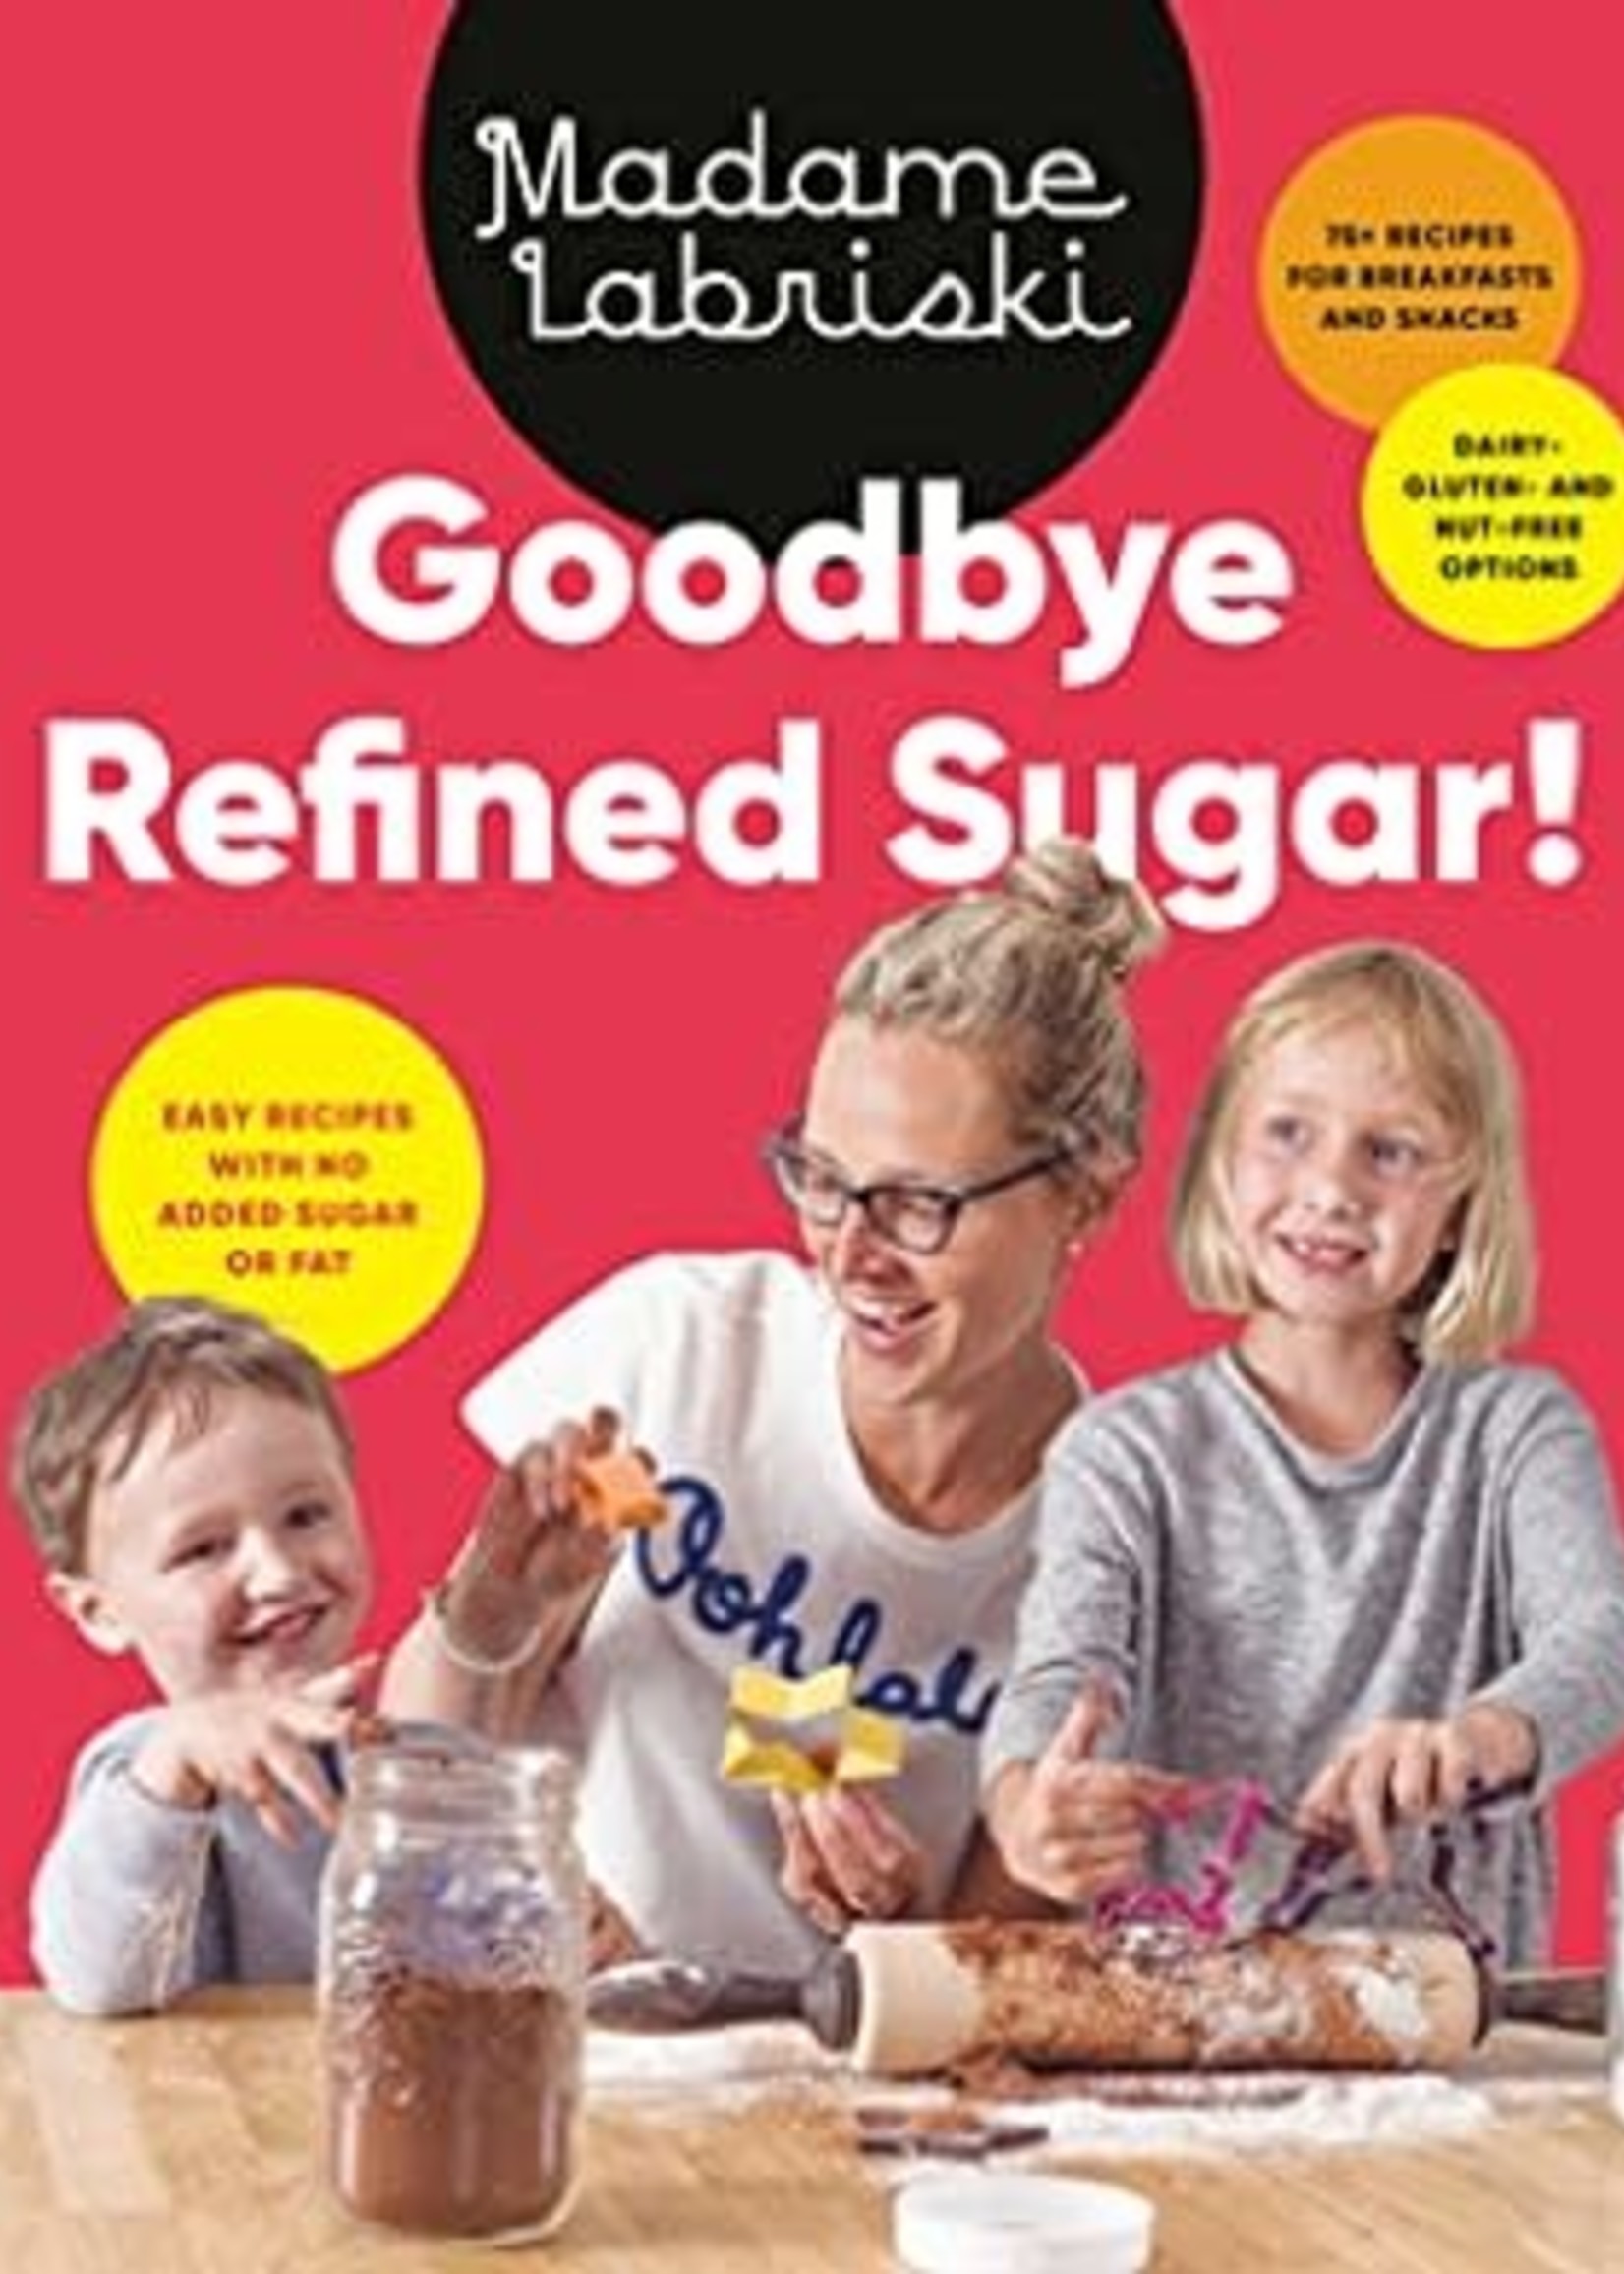 Goodbye Refined Sugar!: Easy Recipes with No Added Sugar or Fat by Madame Labriski